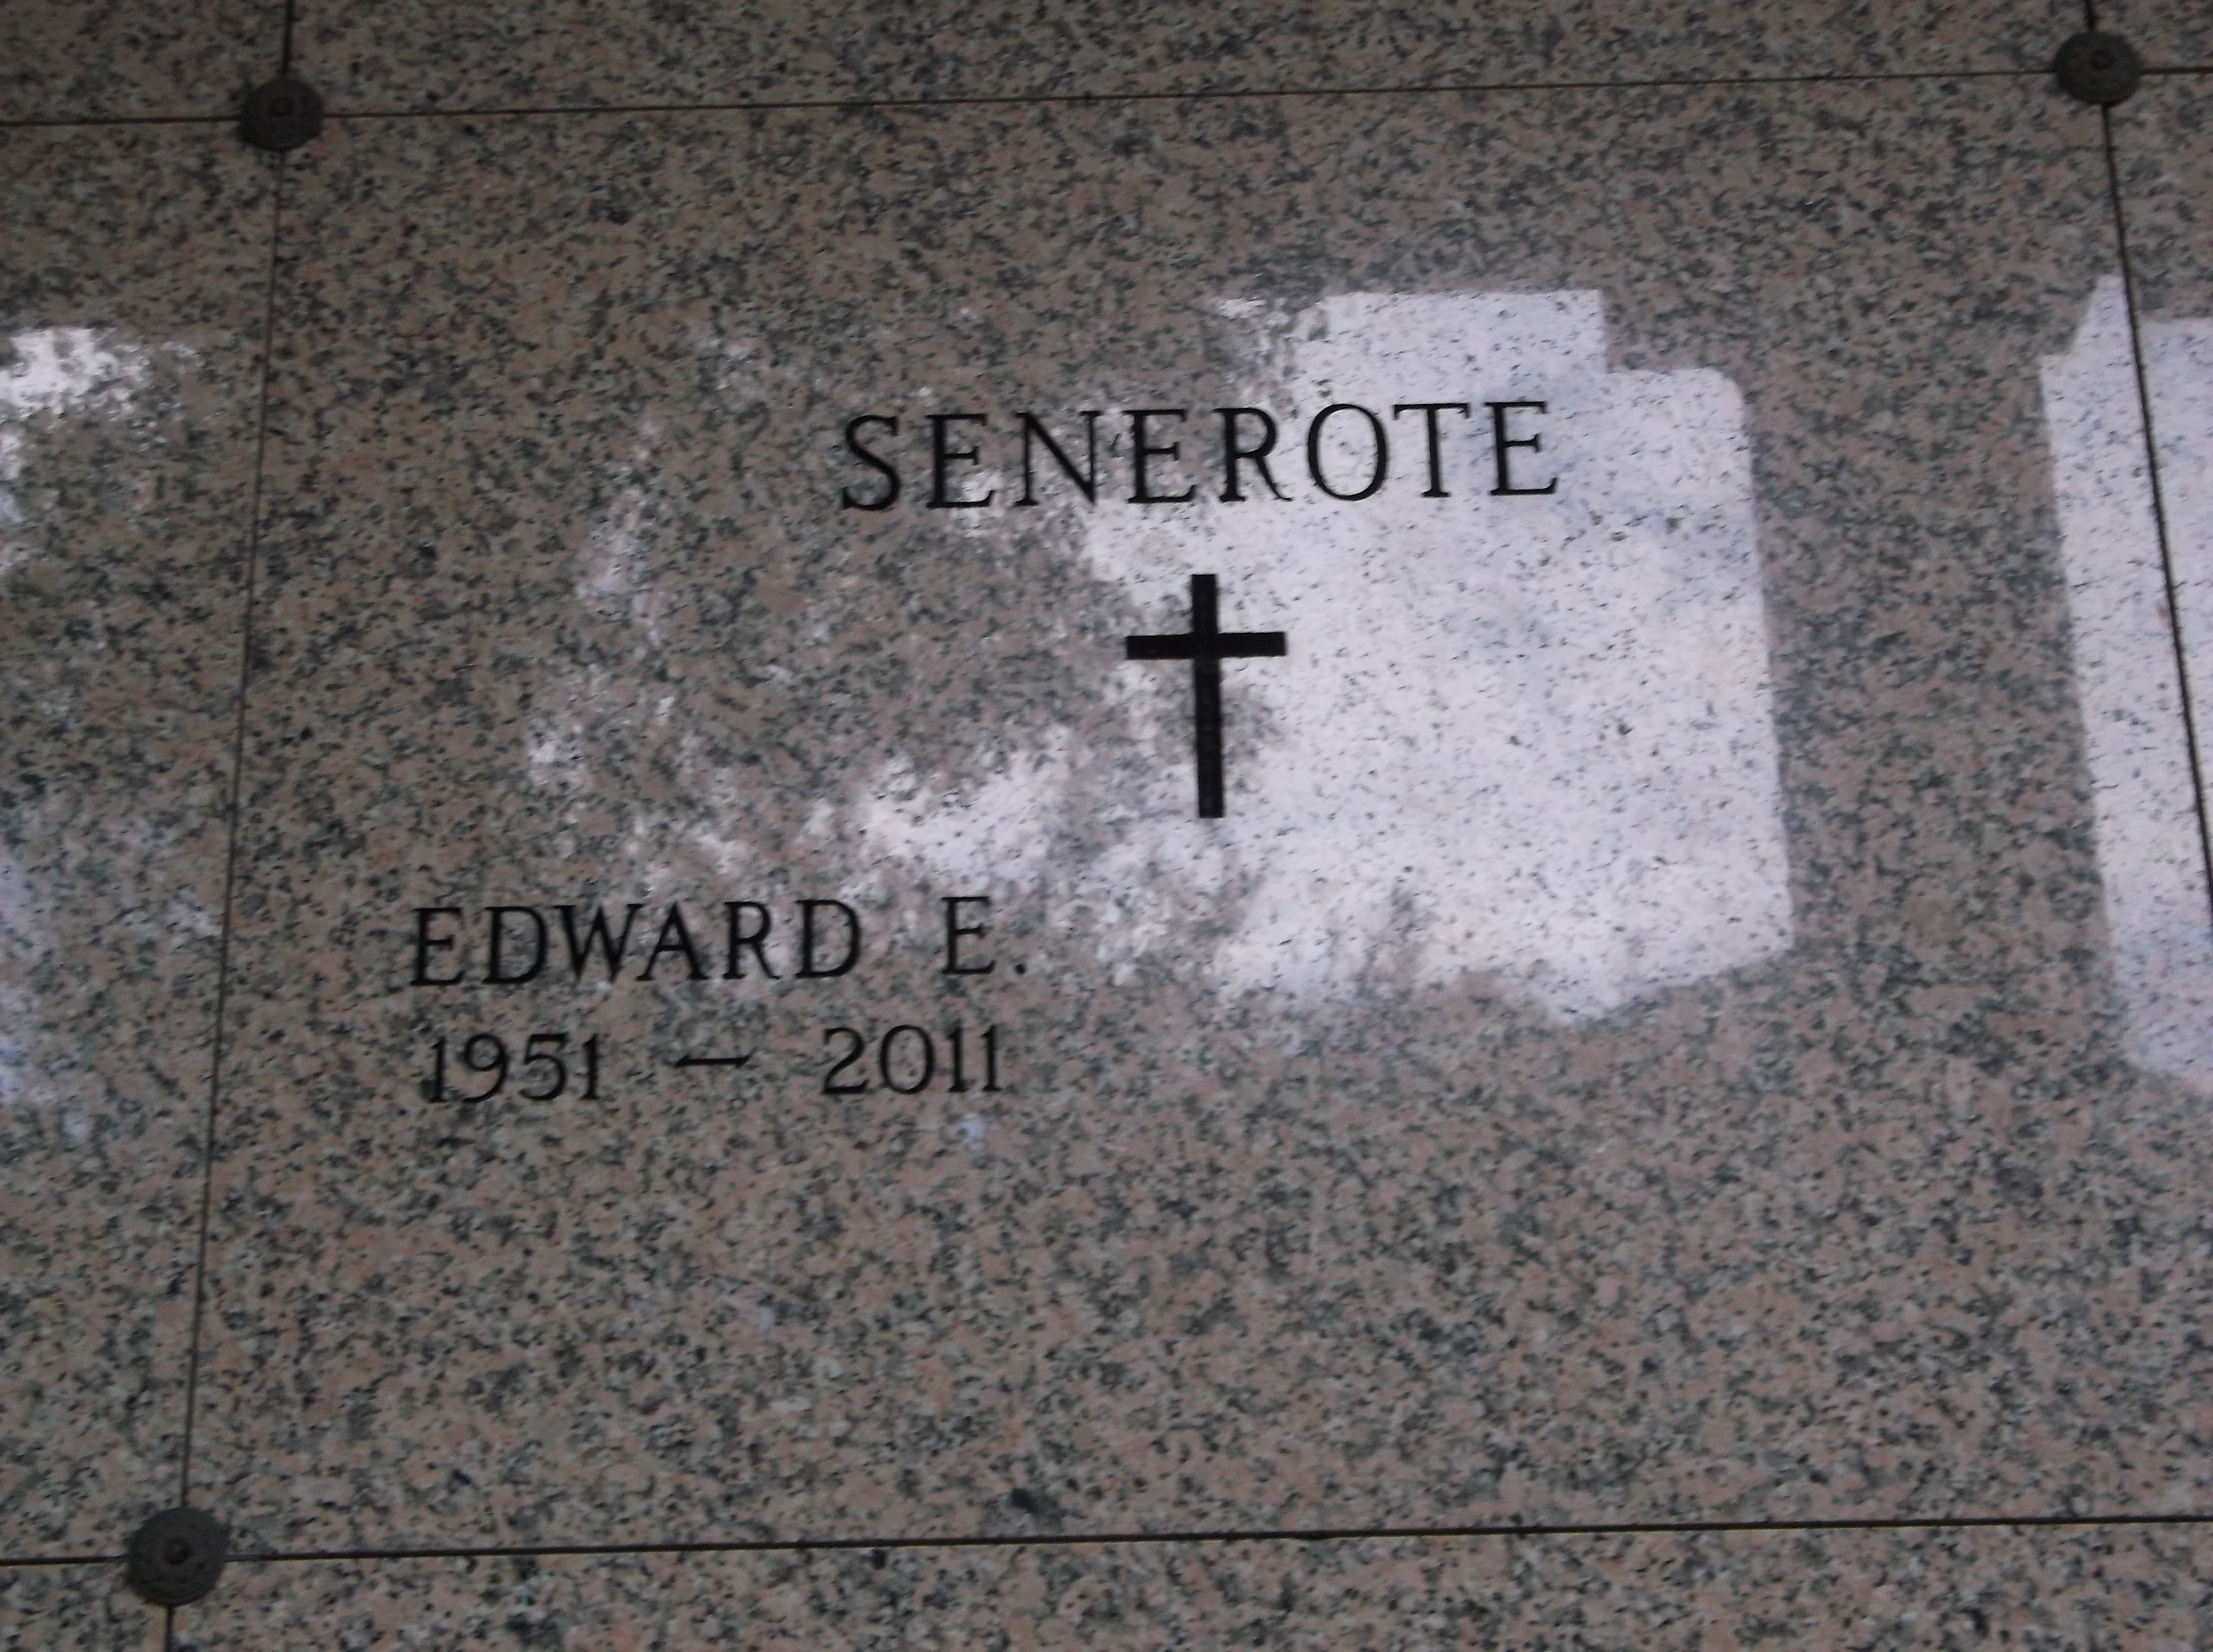 Edward E Senerote